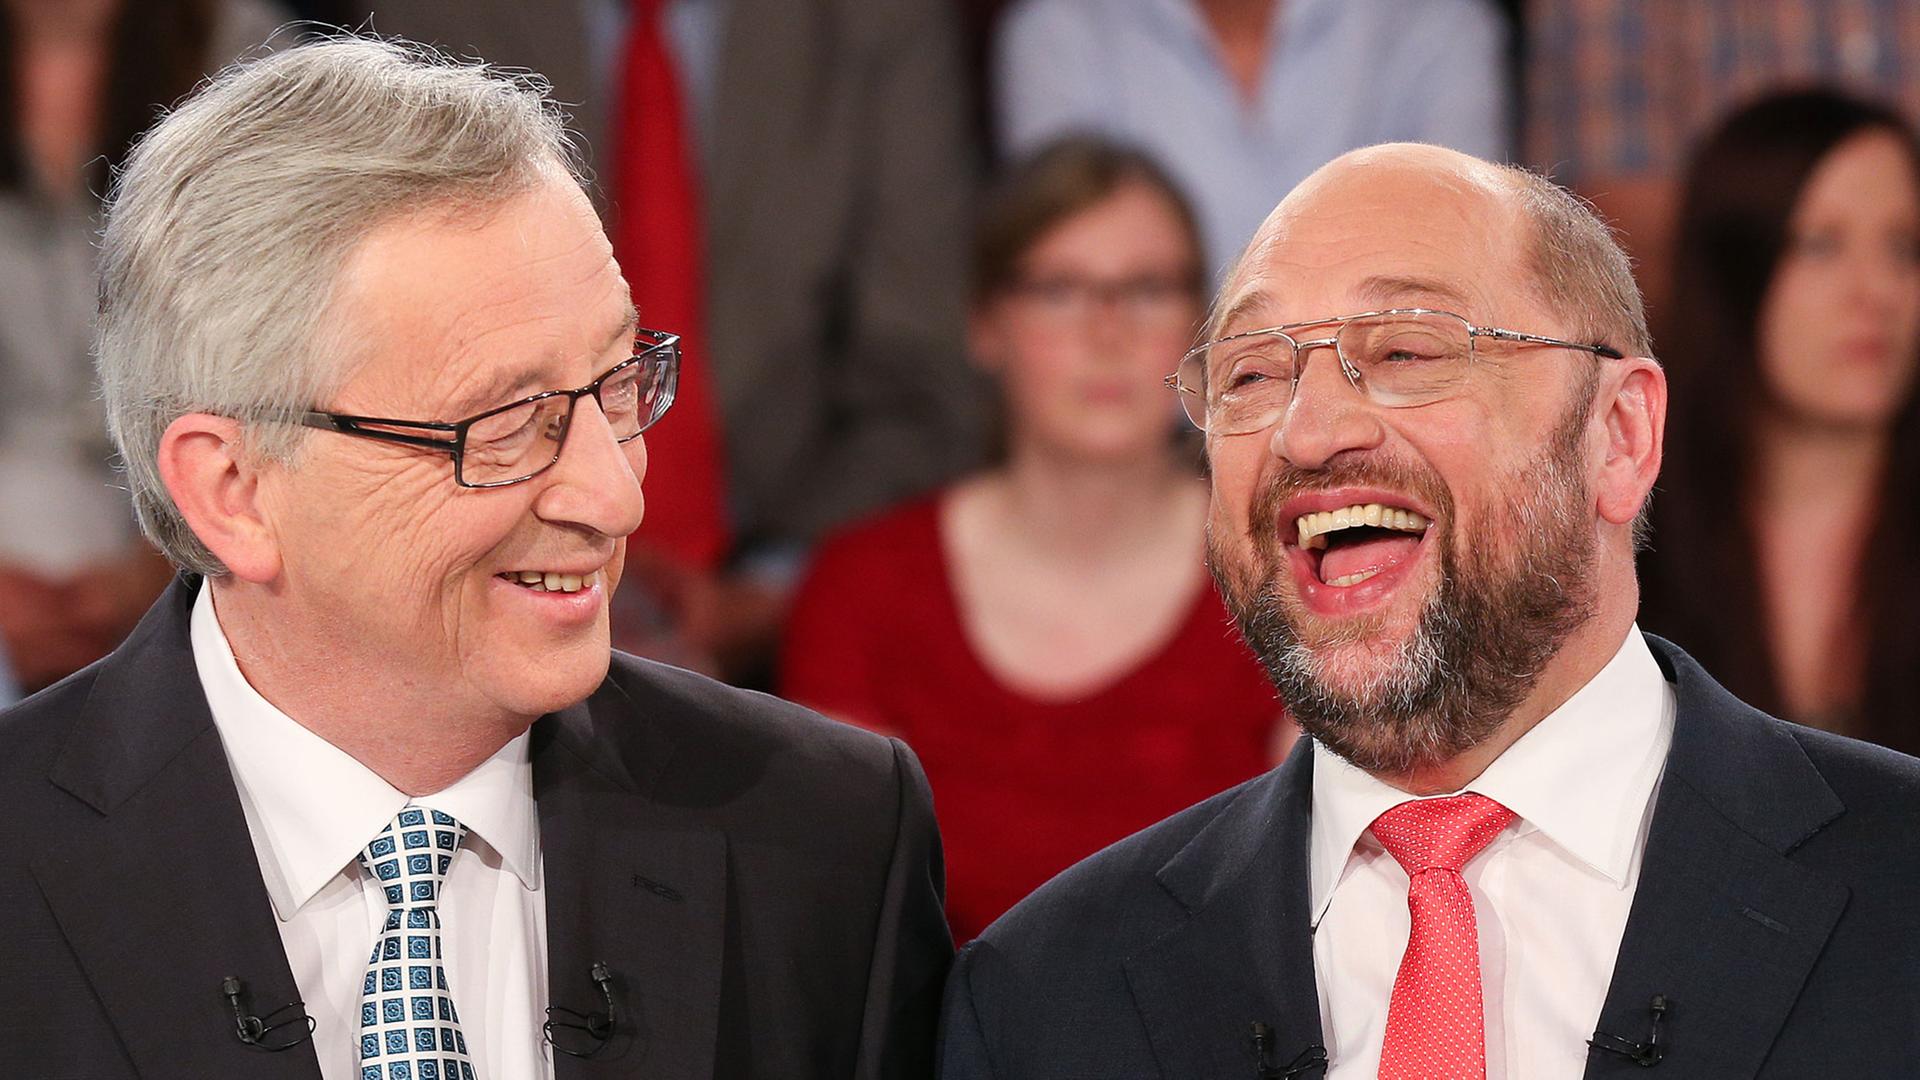 Jean-Claude Juncker und Martin Schulz lachen im Fernsehstudio miteinander